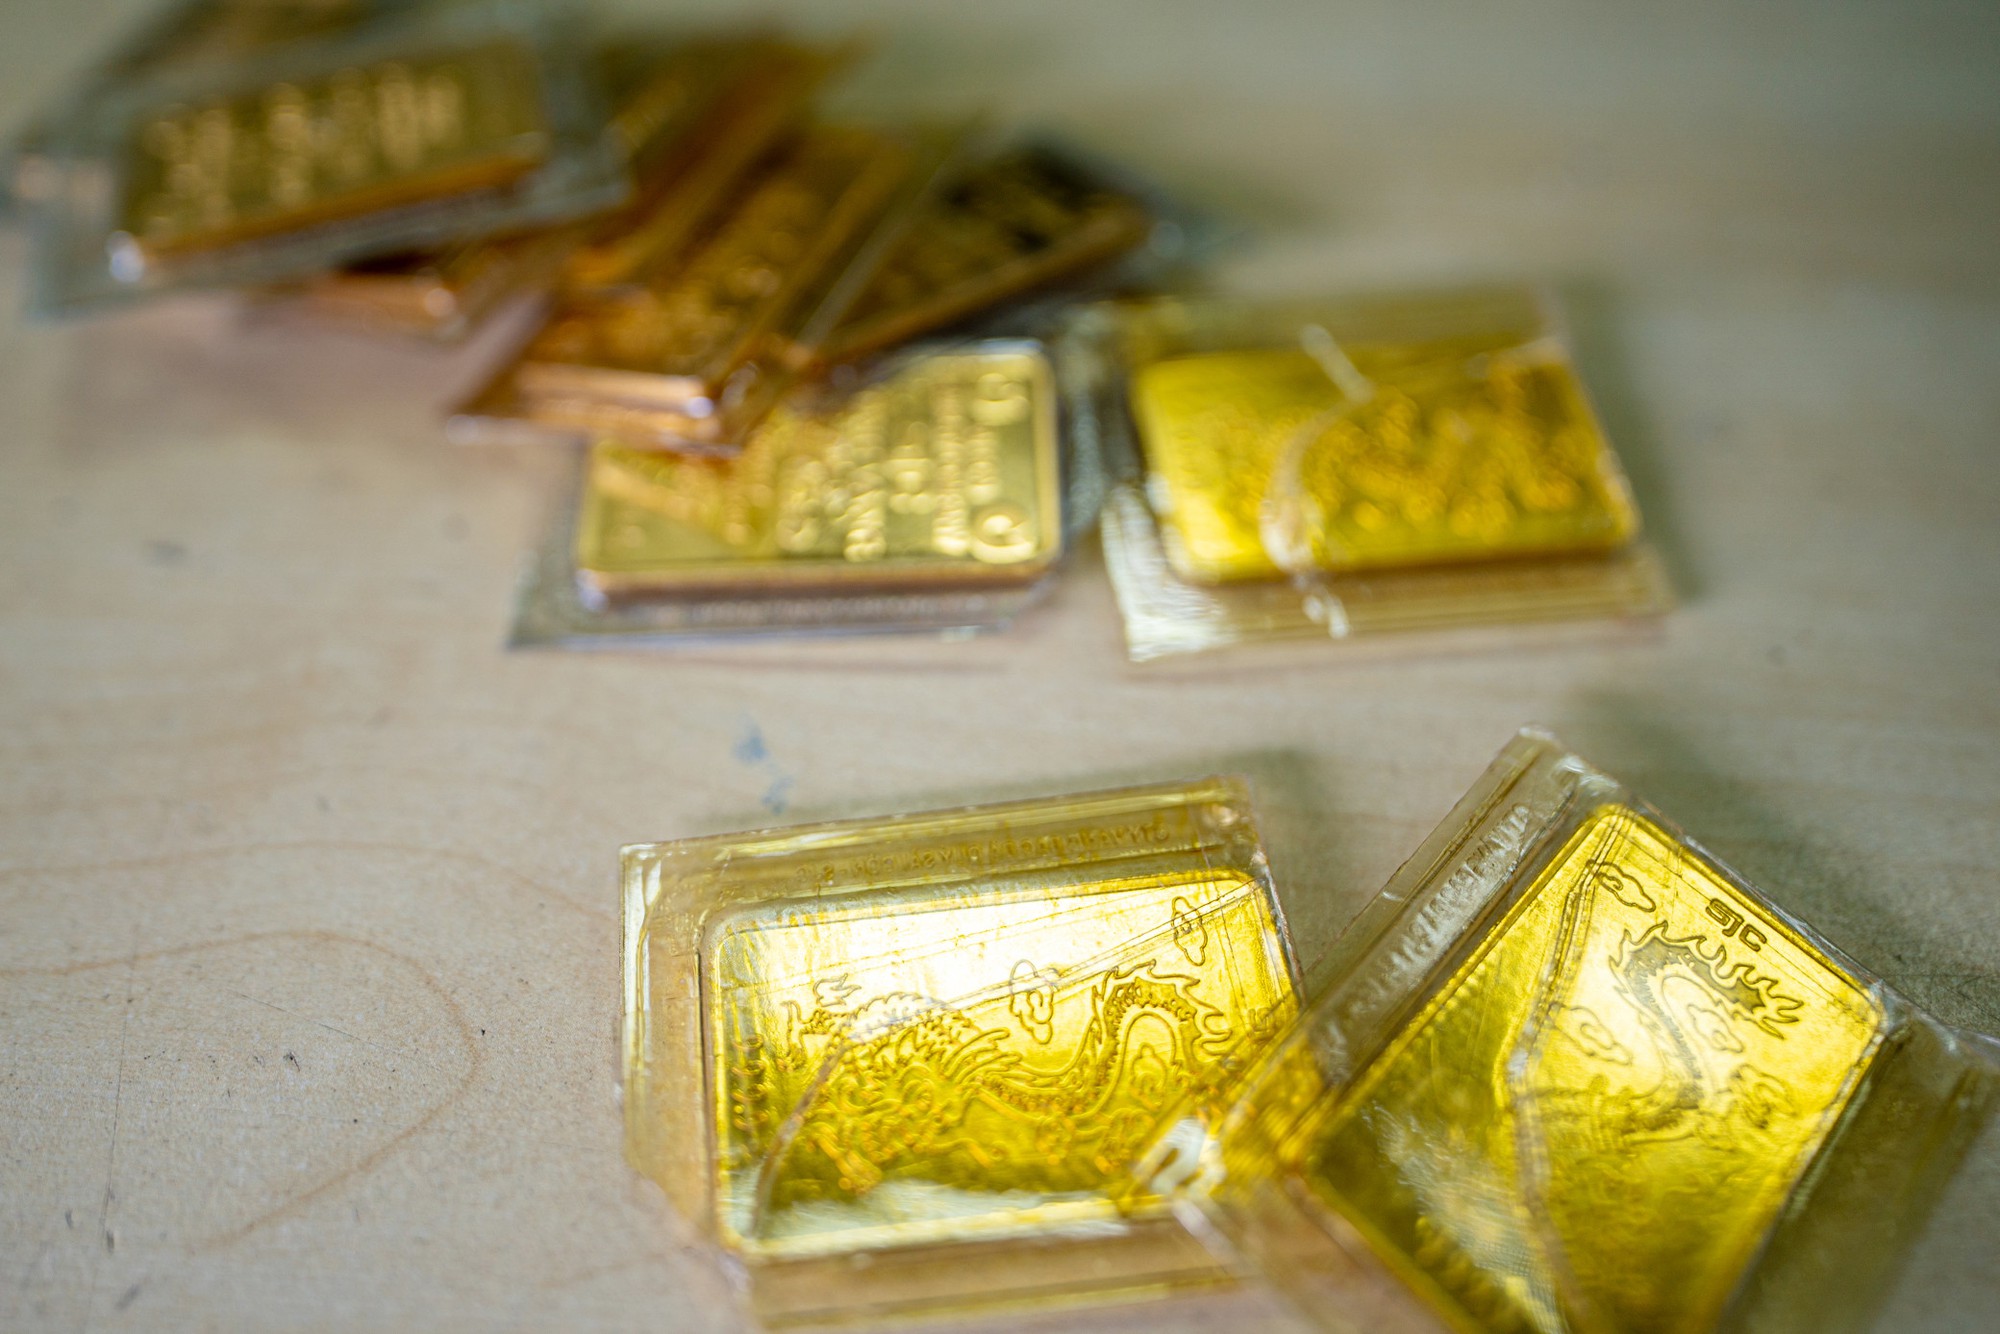 Vàng có thể lên tới 1,4 tỷ đồng/lượng nếu tiền tệ chuyển sang bản vị vàng - Ảnh 2.